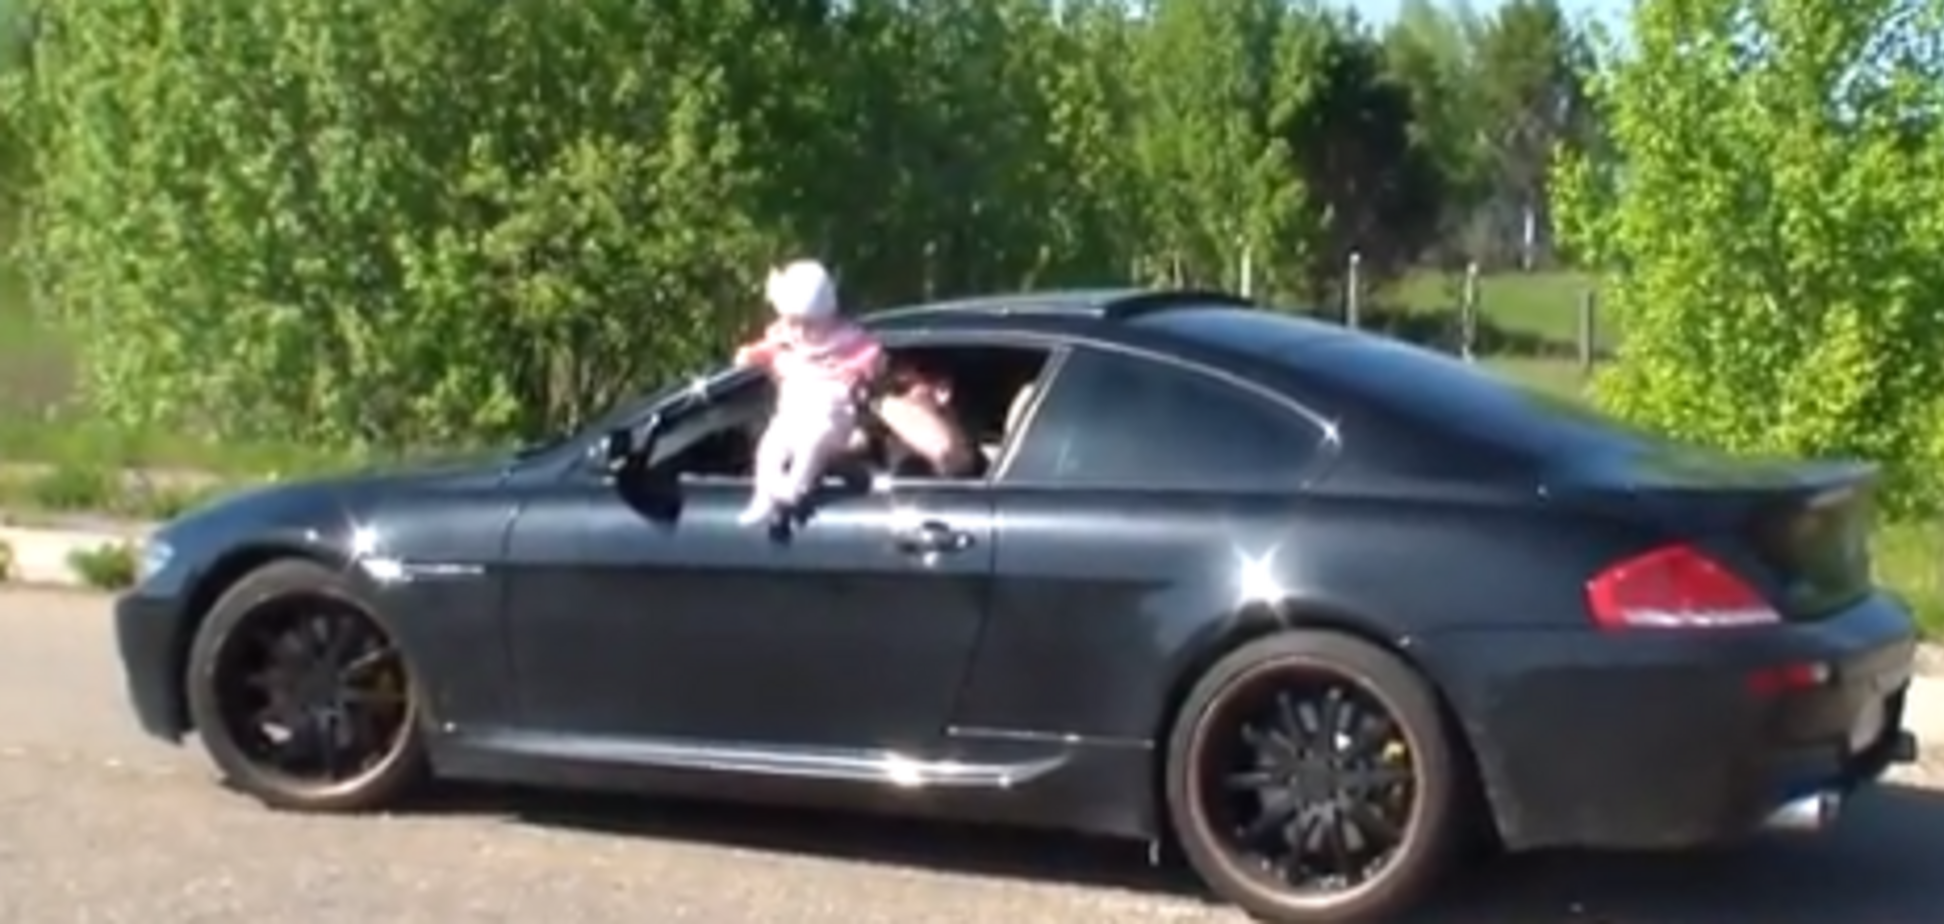 Росіянин влаштував гонки на шаленій швидкості, висунувши з вікна немовля: опубліковано відео